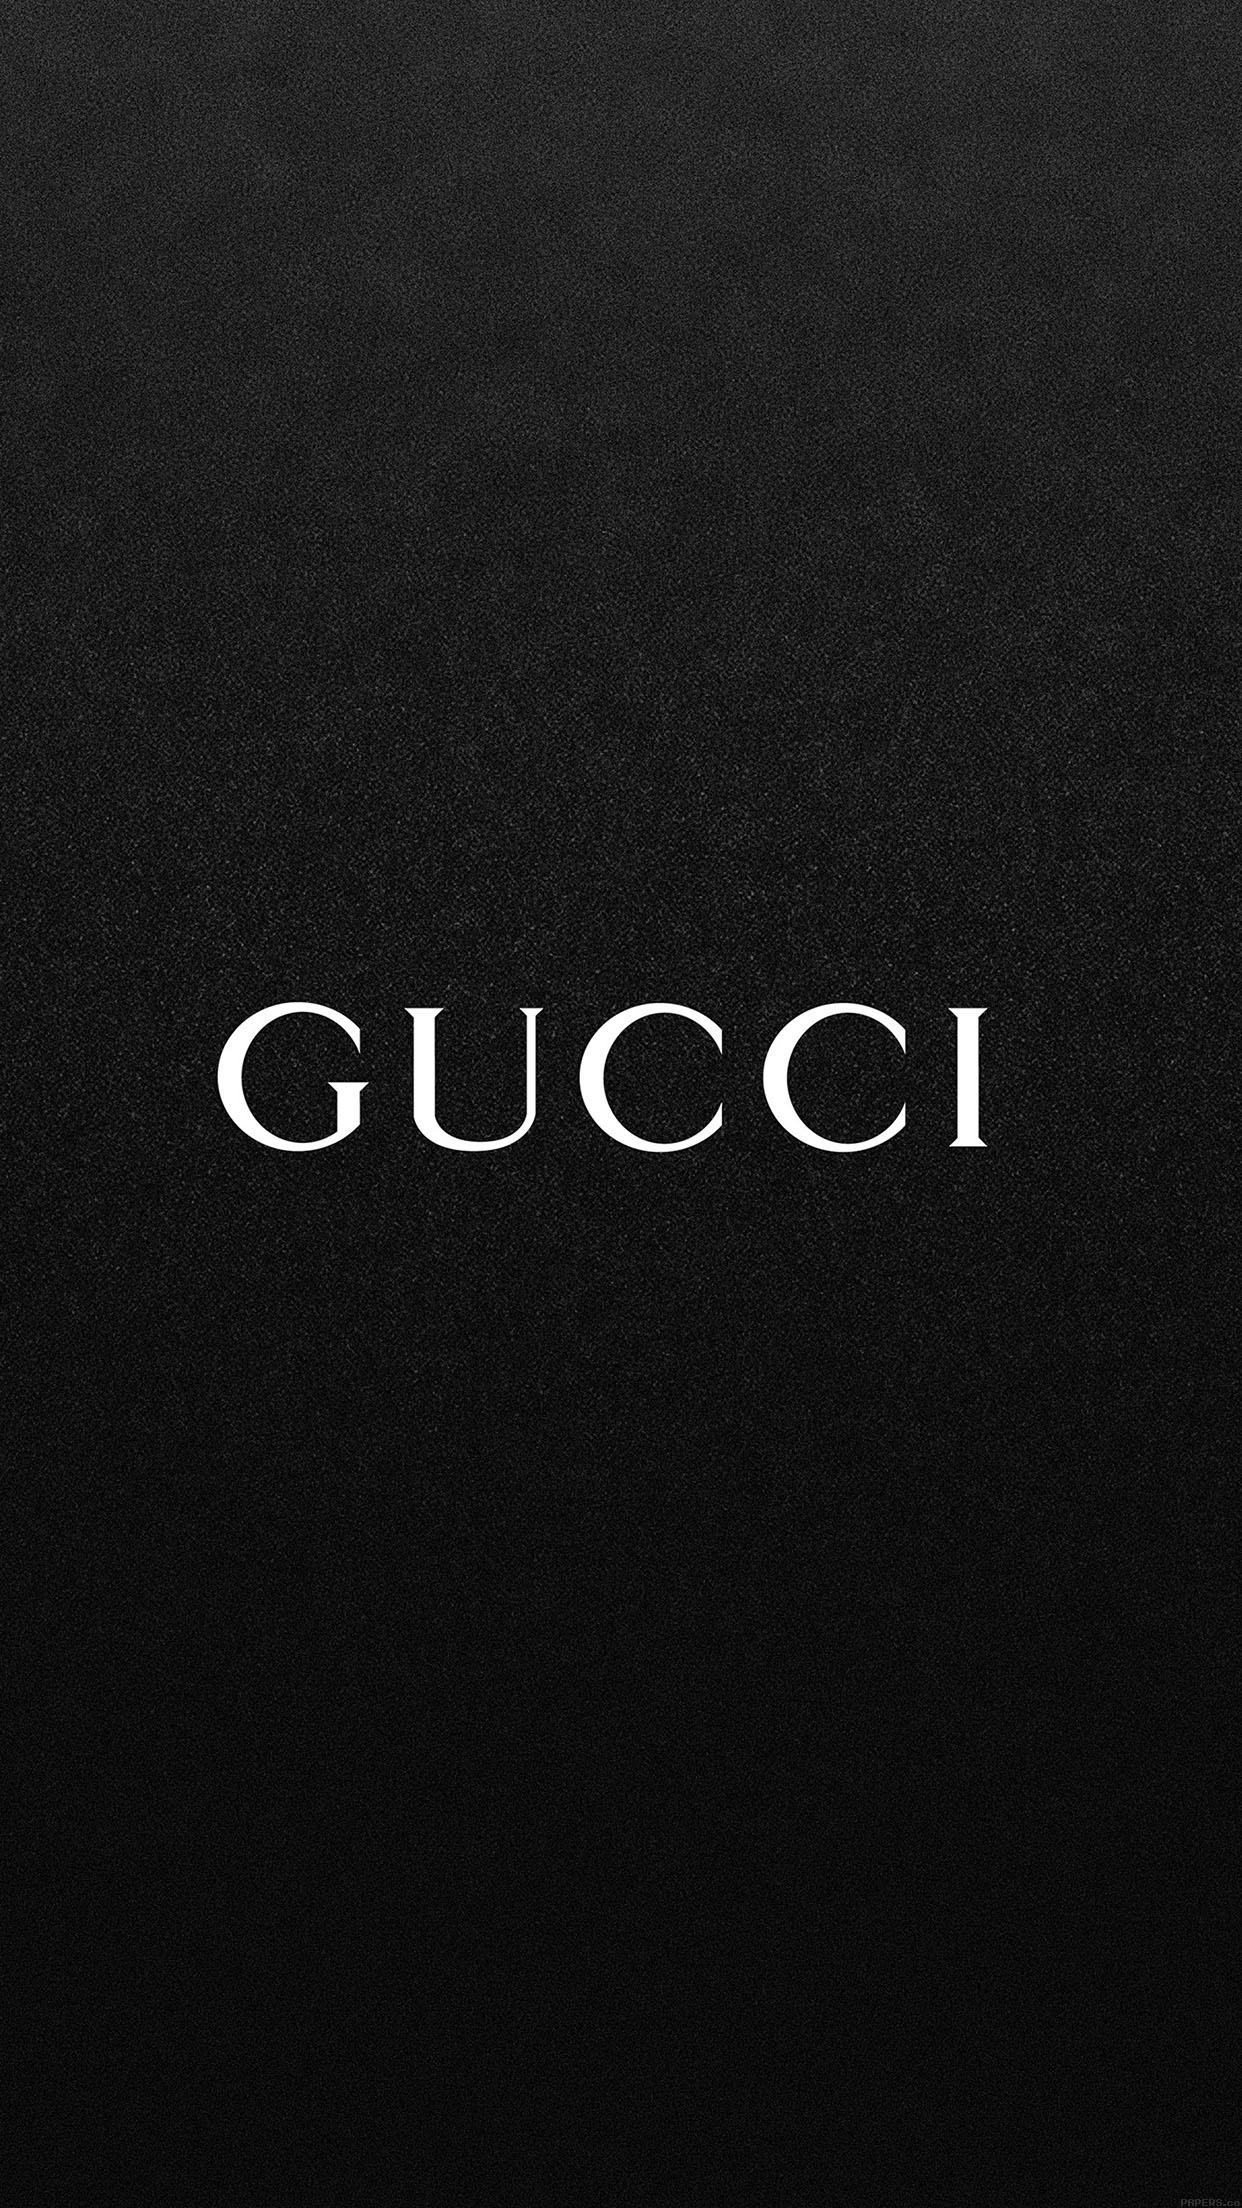 Hình nền đen Gucci đẹp